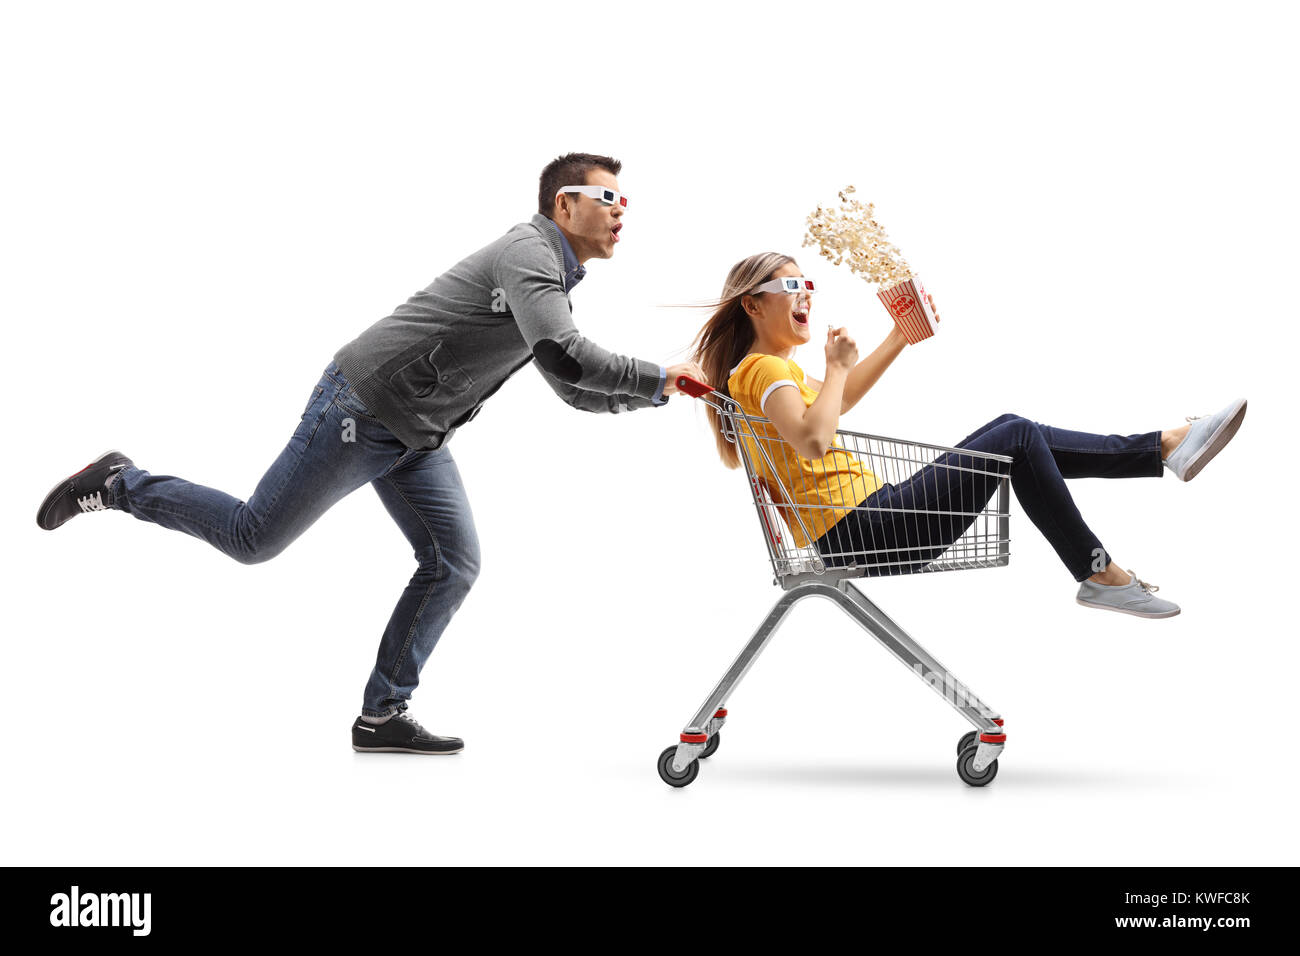 Junge Frau mit Popcorn und 3D-Brille Reiten in einem Warenkorb von einem jungen Mann mit 3D-Brille wird isoliert auf weißem Hintergrund Stockfoto